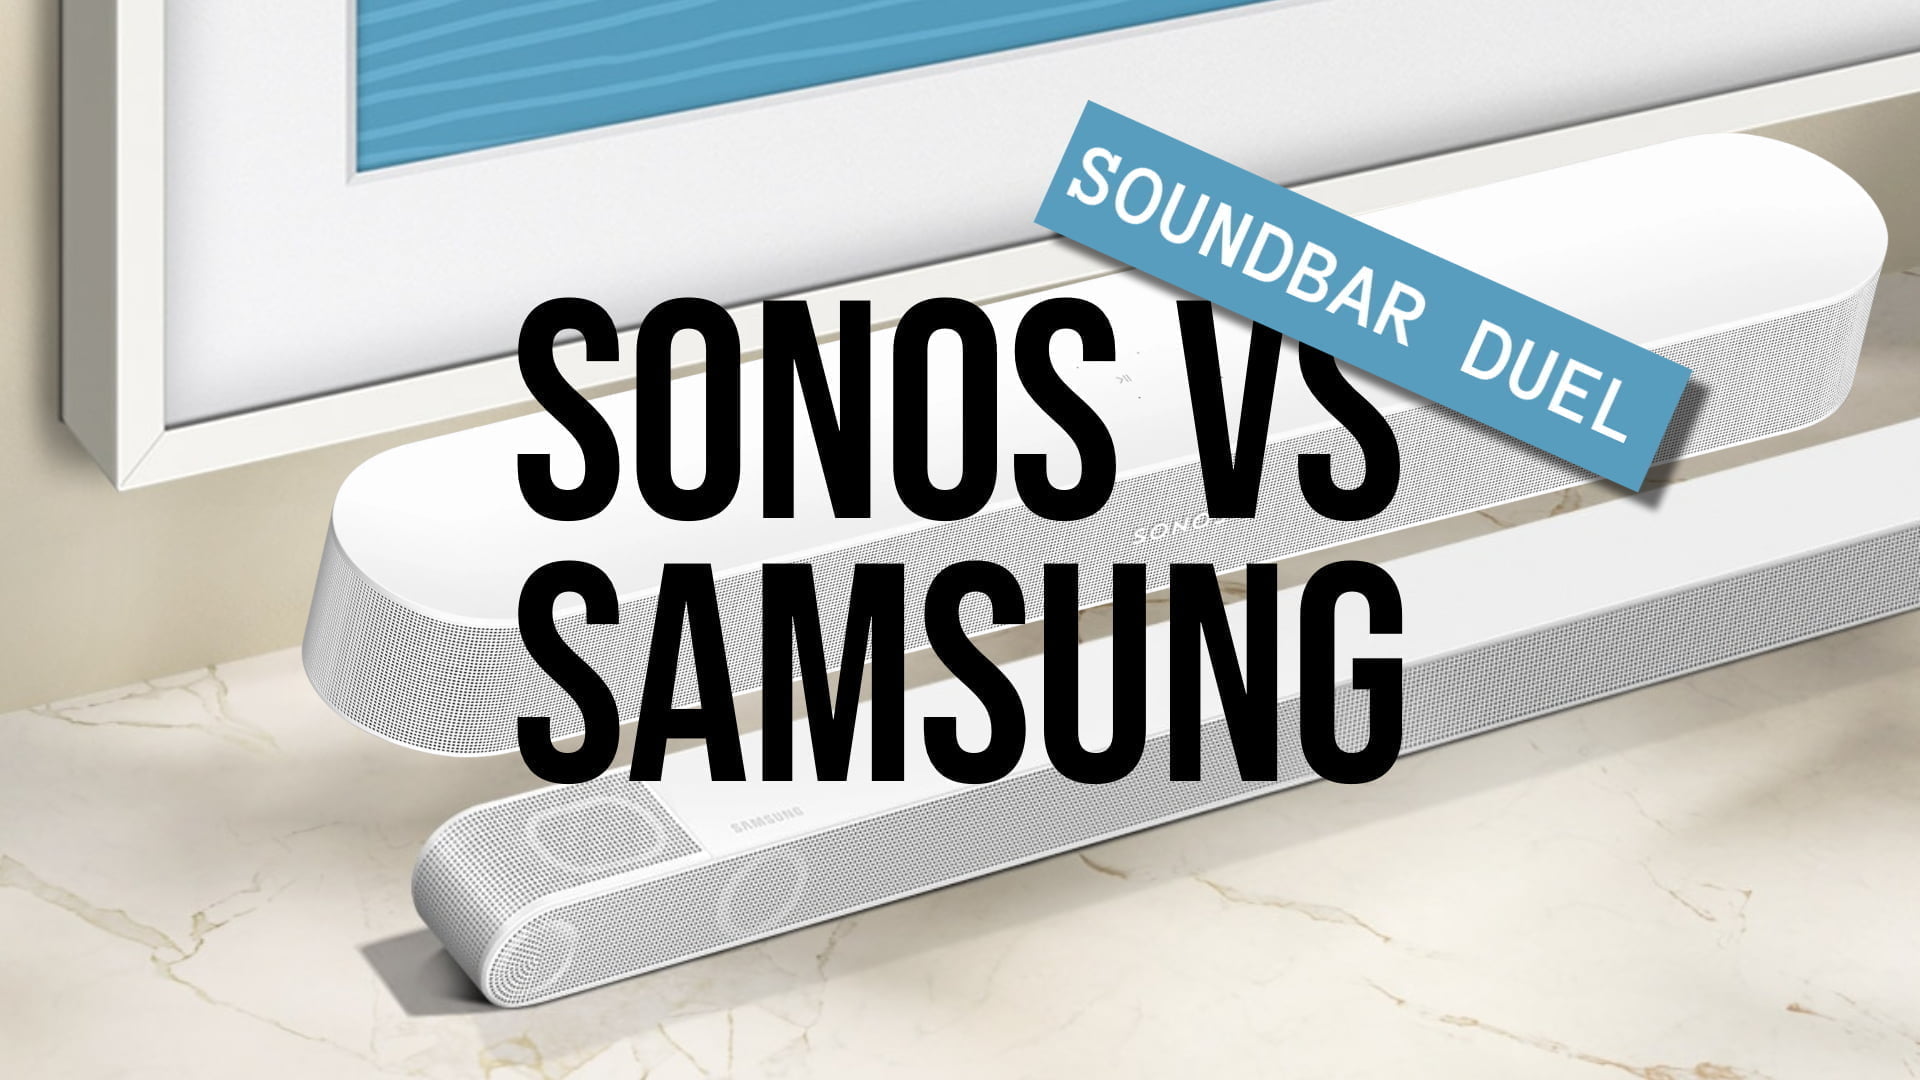 ulækkert Fortrolig lys pære Soundbar duel: Sonos vs. Samsung - MereMobil.dk